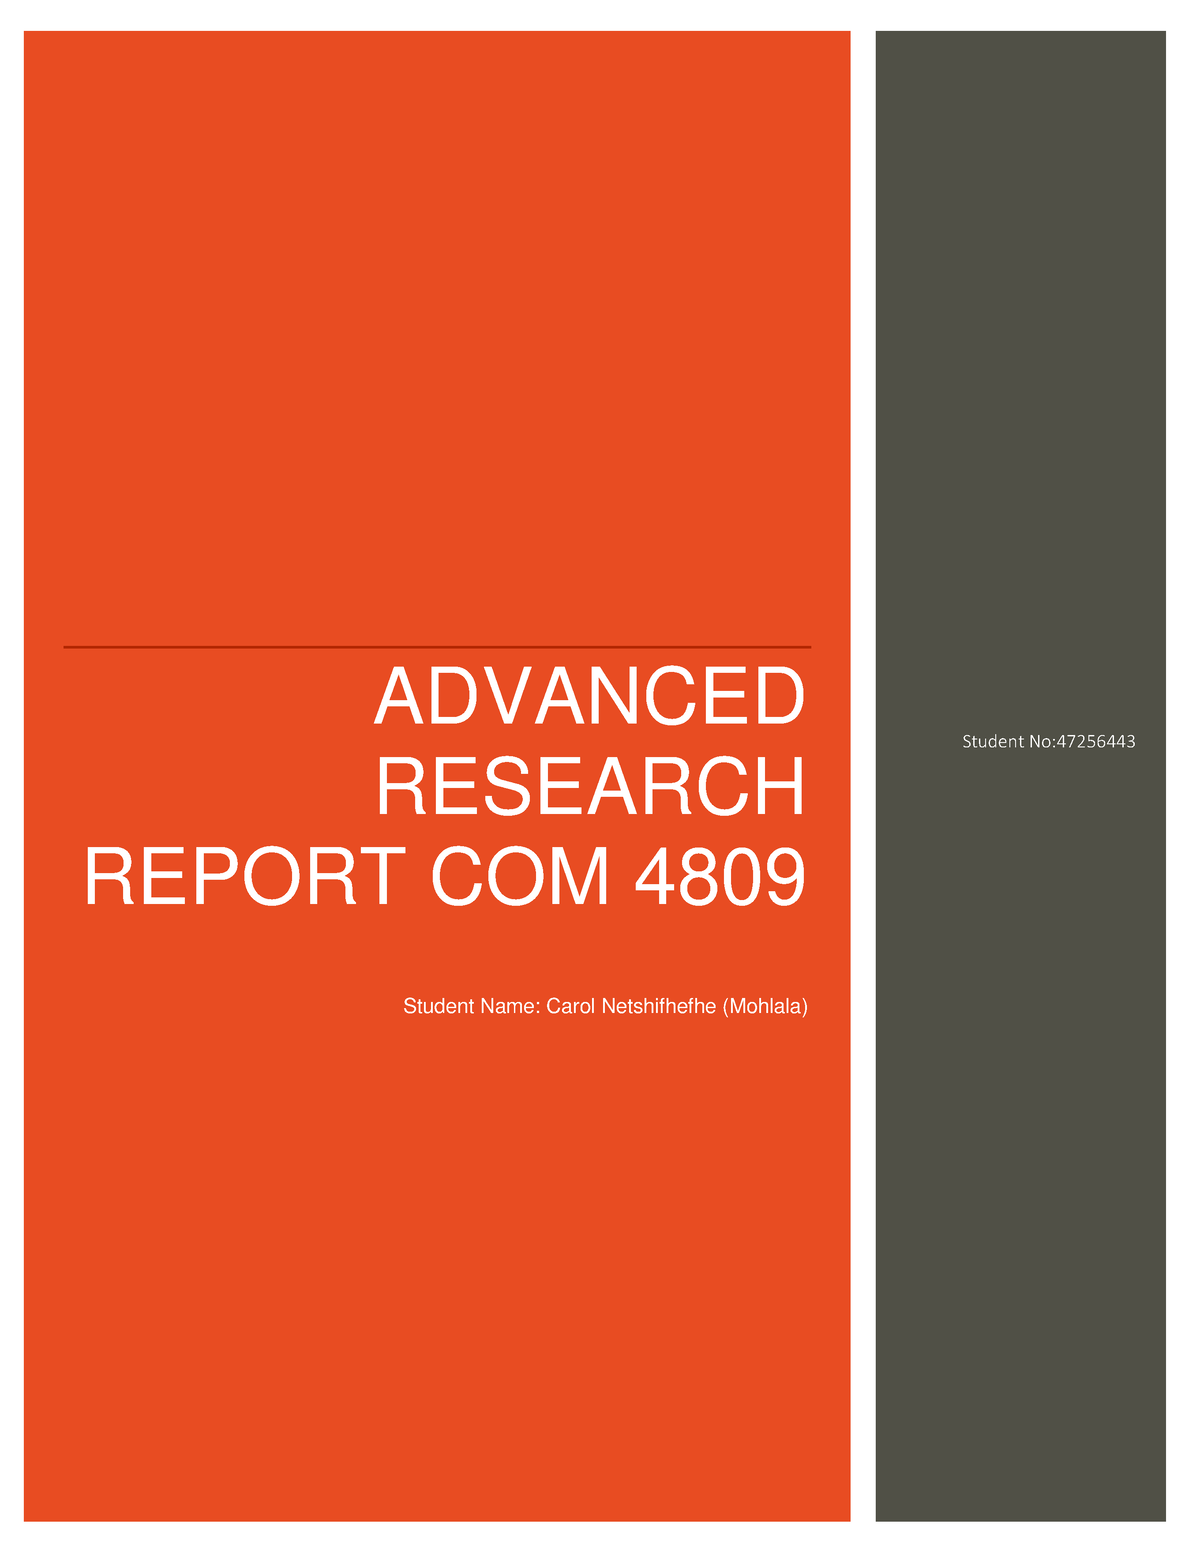 COM4809 Portfolio Exam 2019 - ADVANCED RESEARCH REPORT COM 4809 Student ...